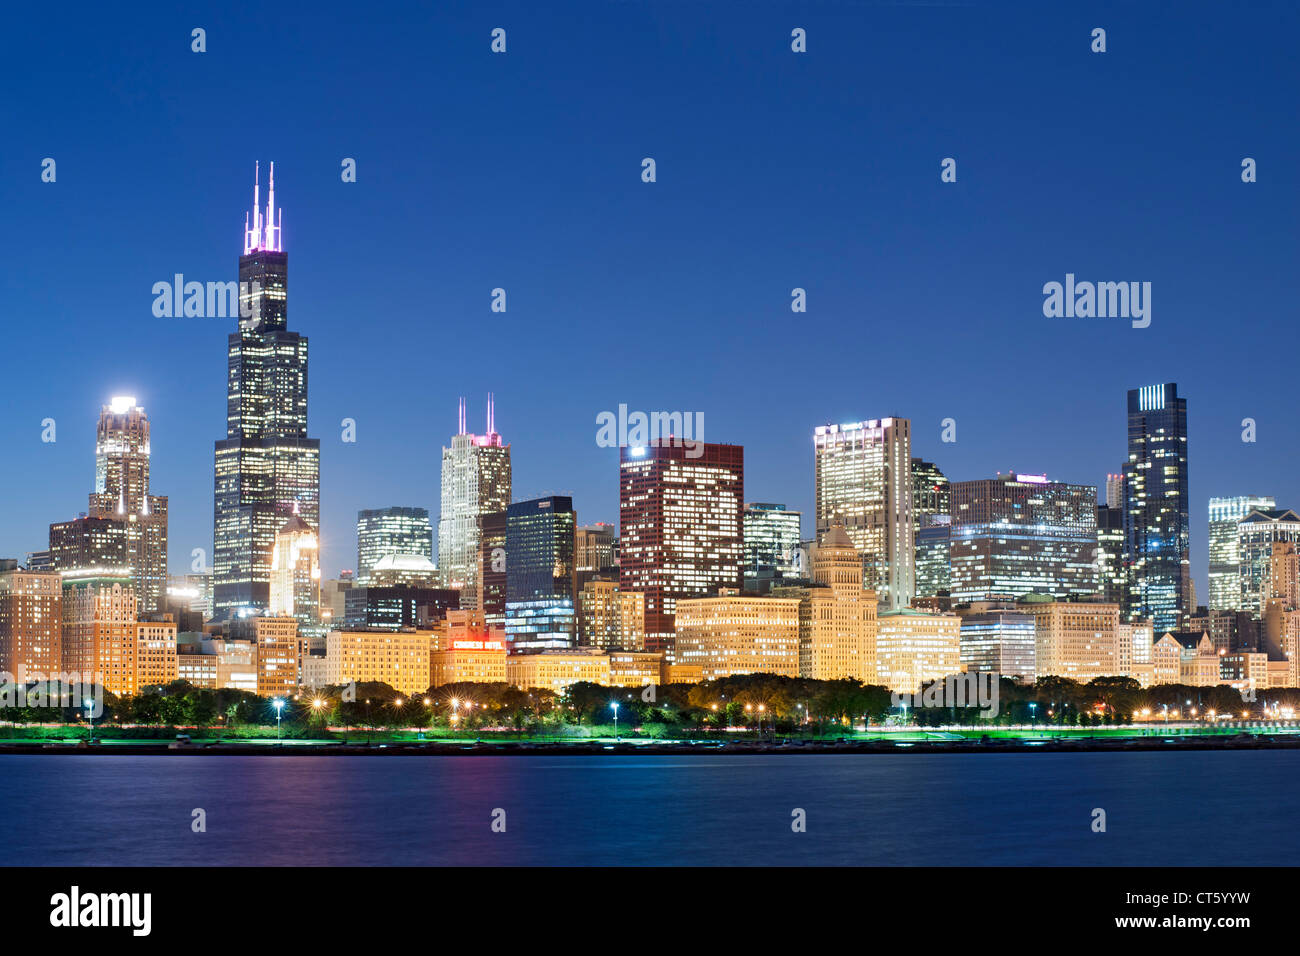 La tombée de la vue de l'horizon de Chicago. La tour de 110 étages est la Willis Tower, anciennement connu sous le nom de Sears Tower. Banque D'Images